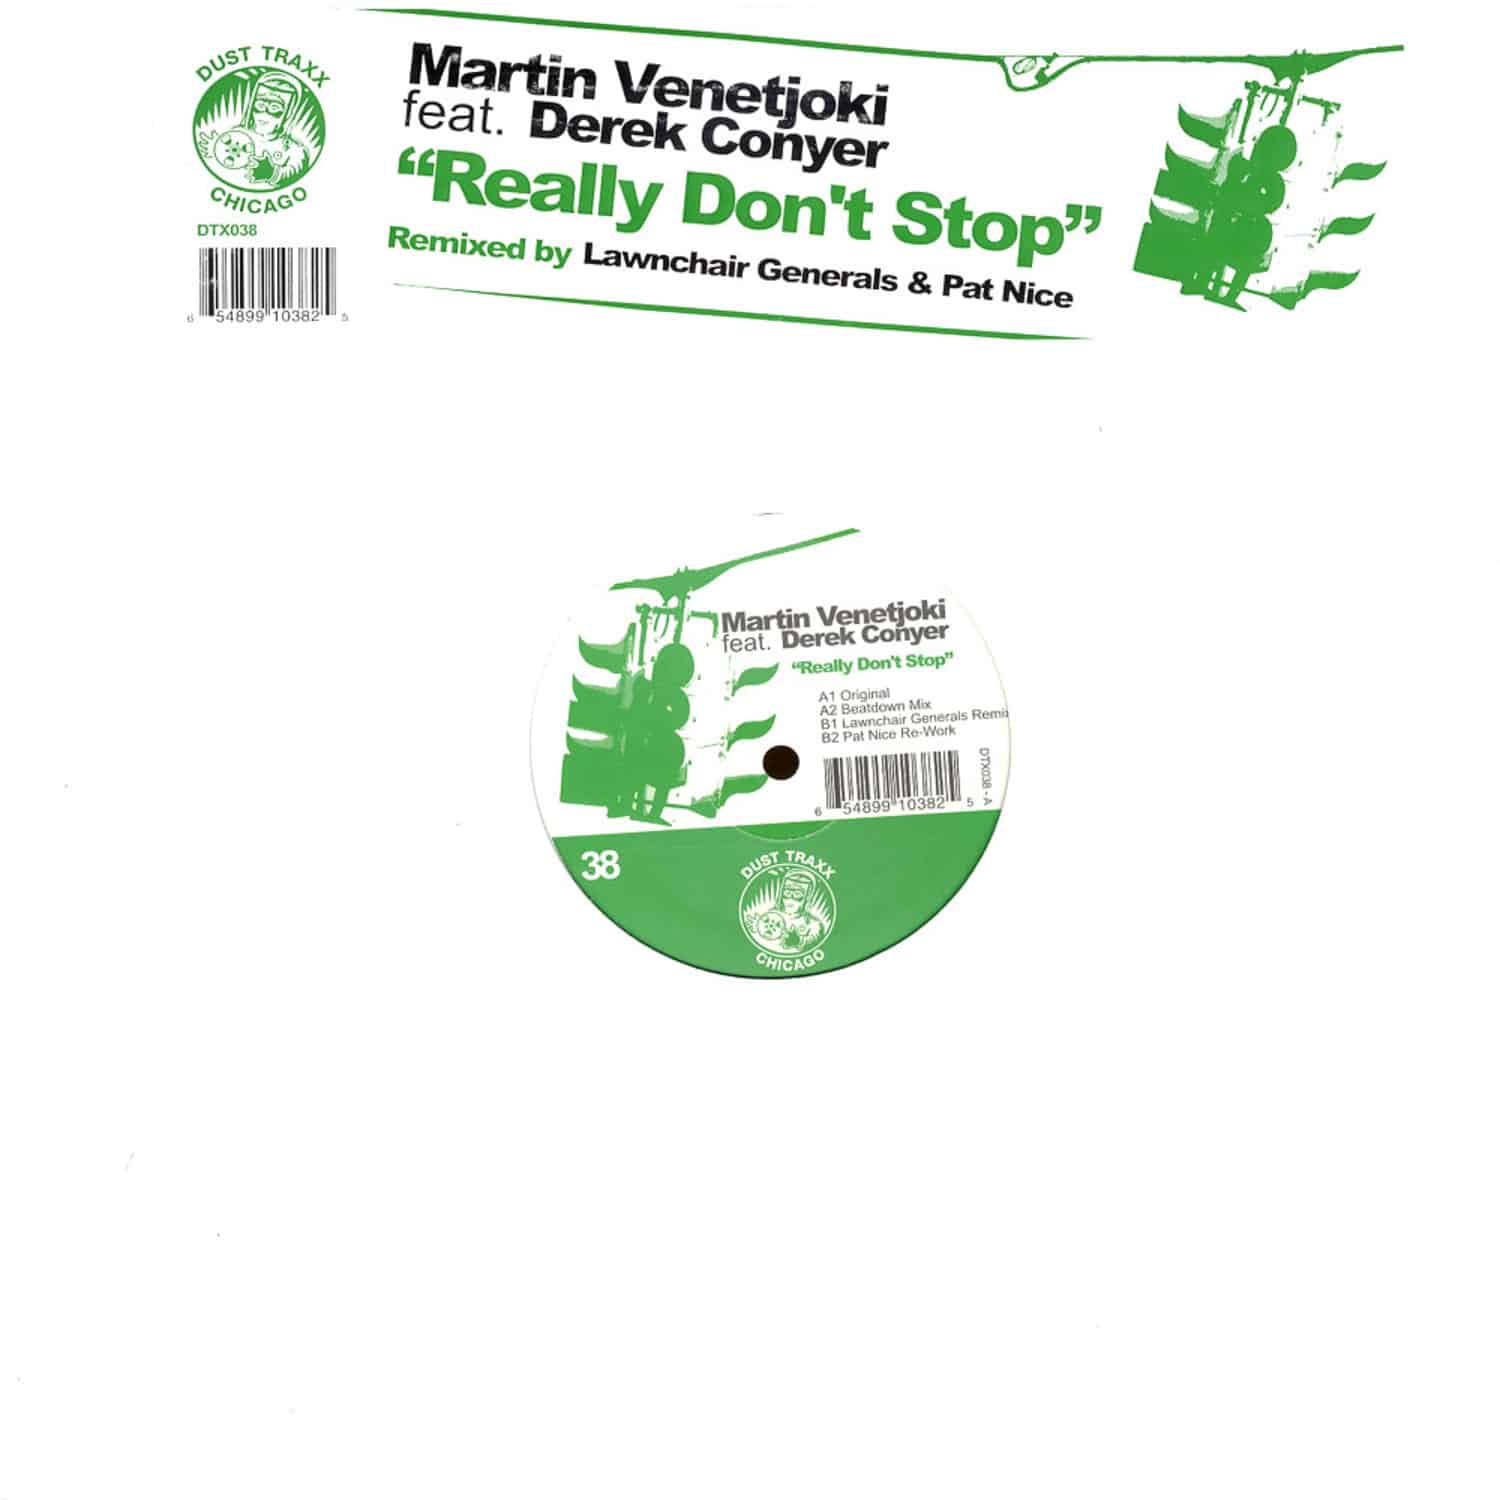 Martin Venetjoki feat. Derek Conyer - REALLY DONT STOP